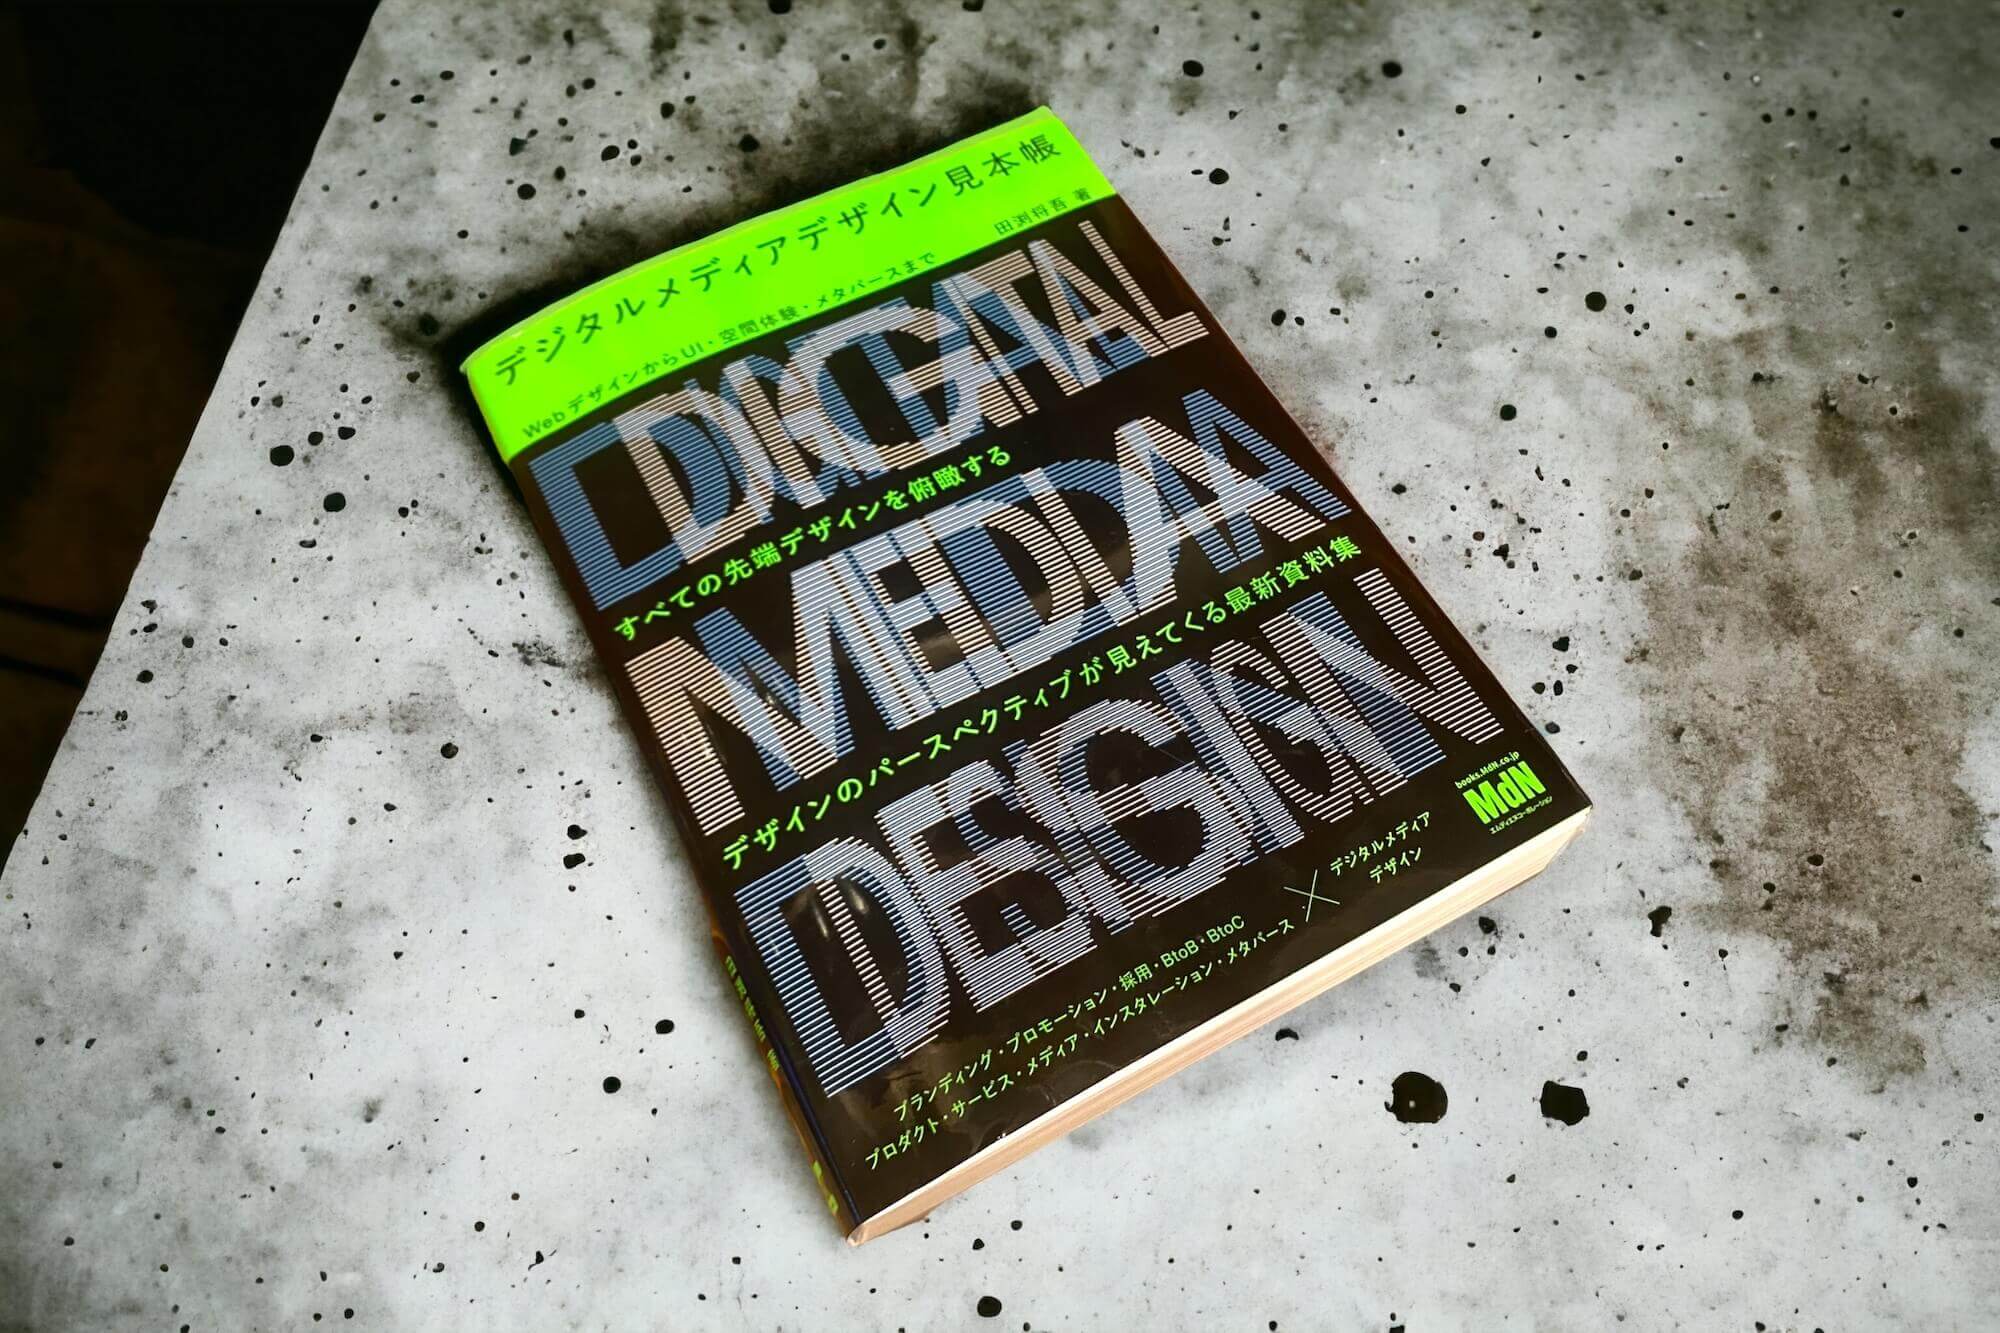 ギャラリーサイトがそのまま本に。デジタルメディアデザイン見本帳が届いた【レビュー】